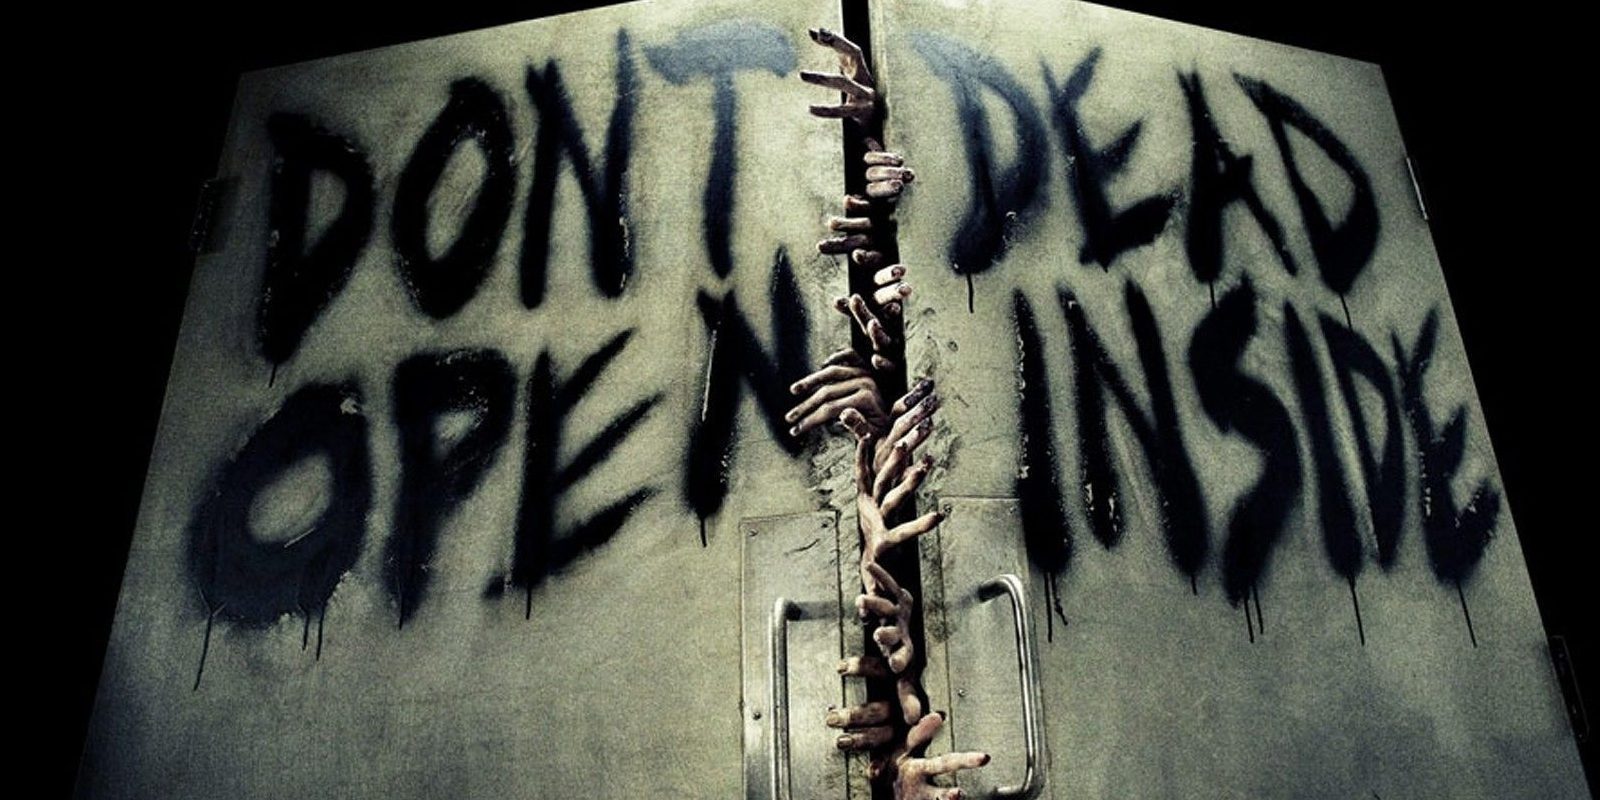 El final de la 7ª temporada 'The Walking Dead' registra bajas audiencias para una season finale